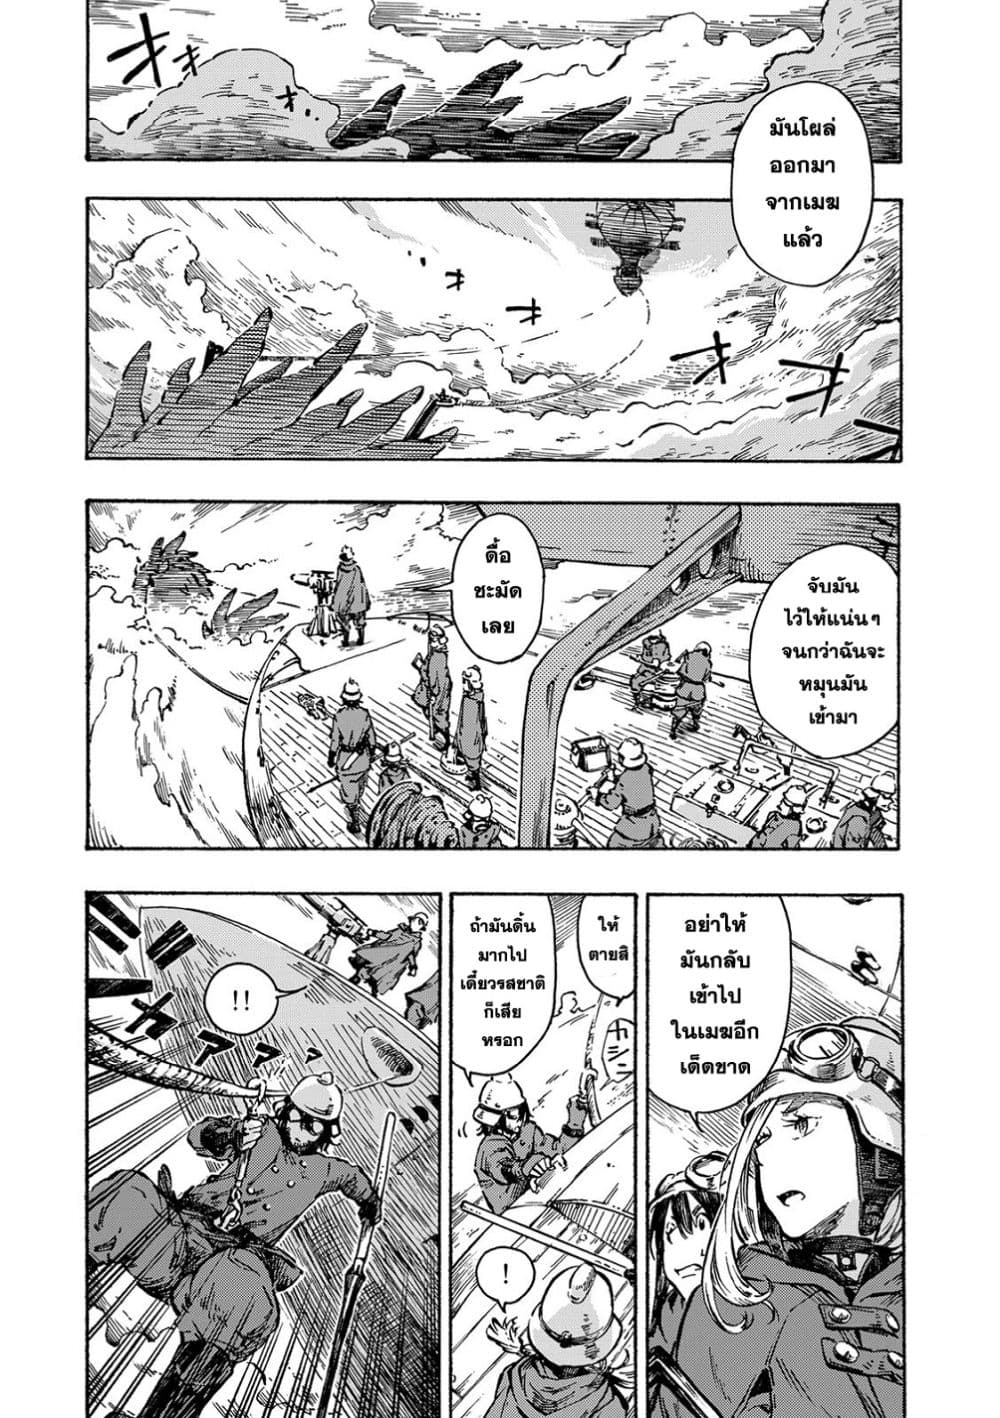 Kuutei-Dragons-Chapter1-5.jpg